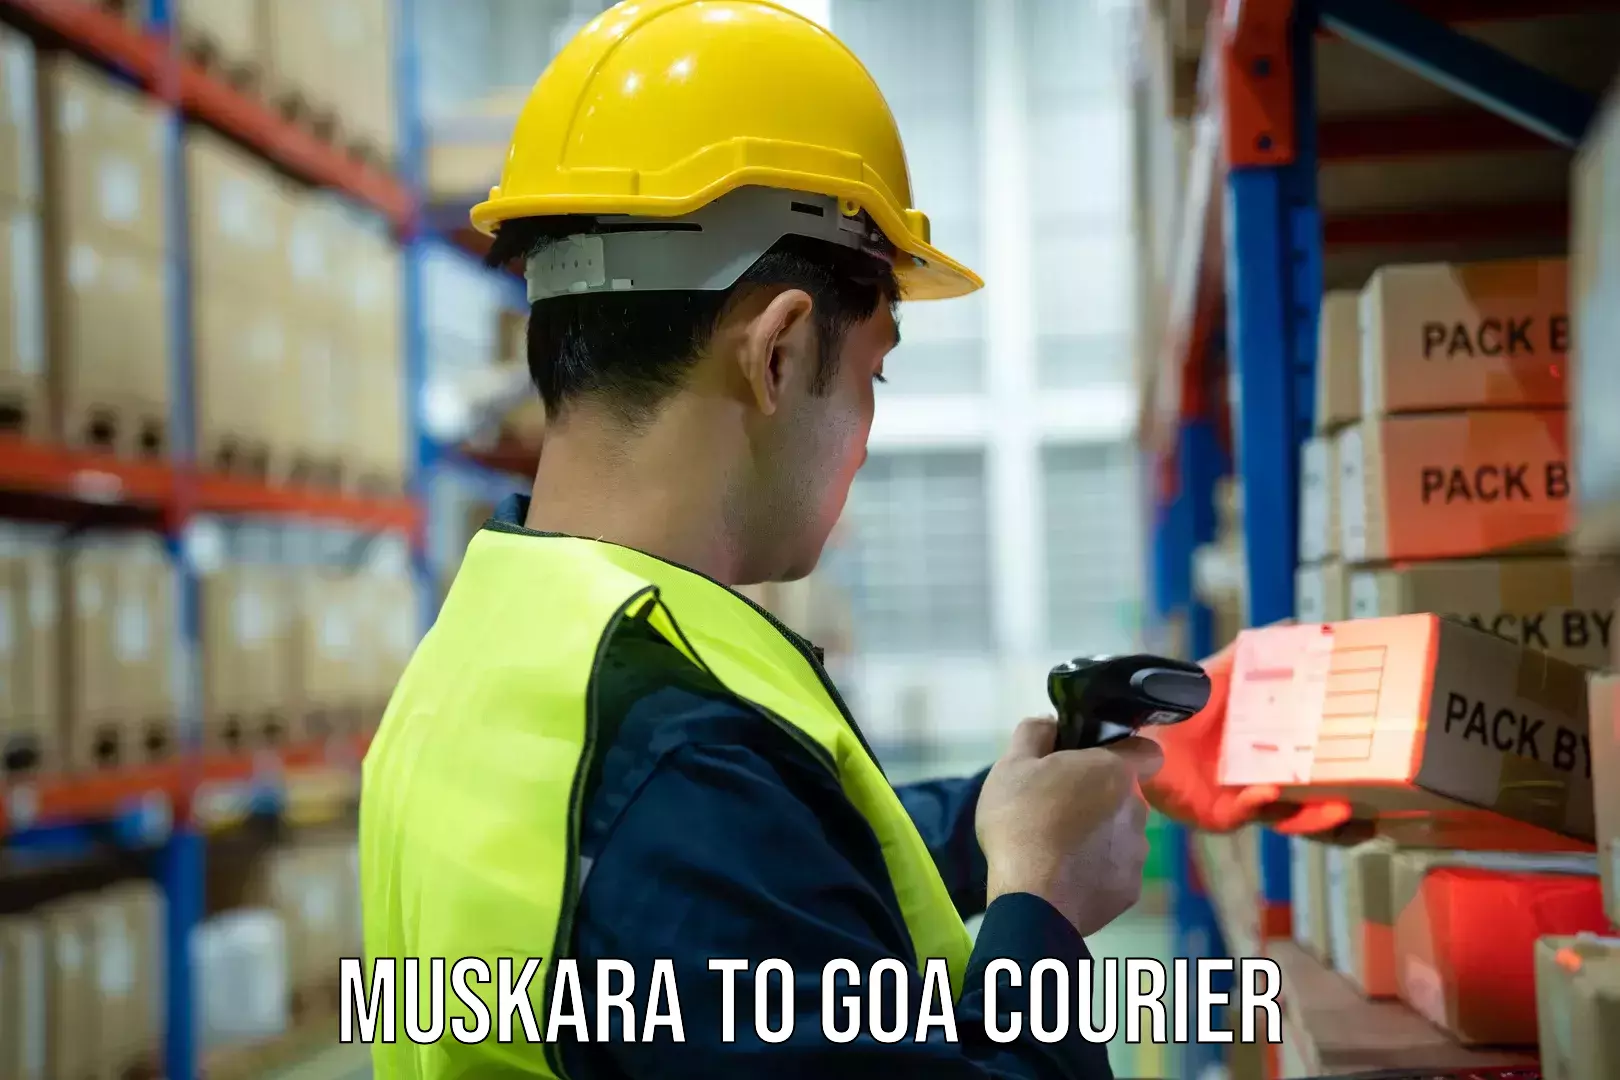 Cargo courier service Muskara to Goa